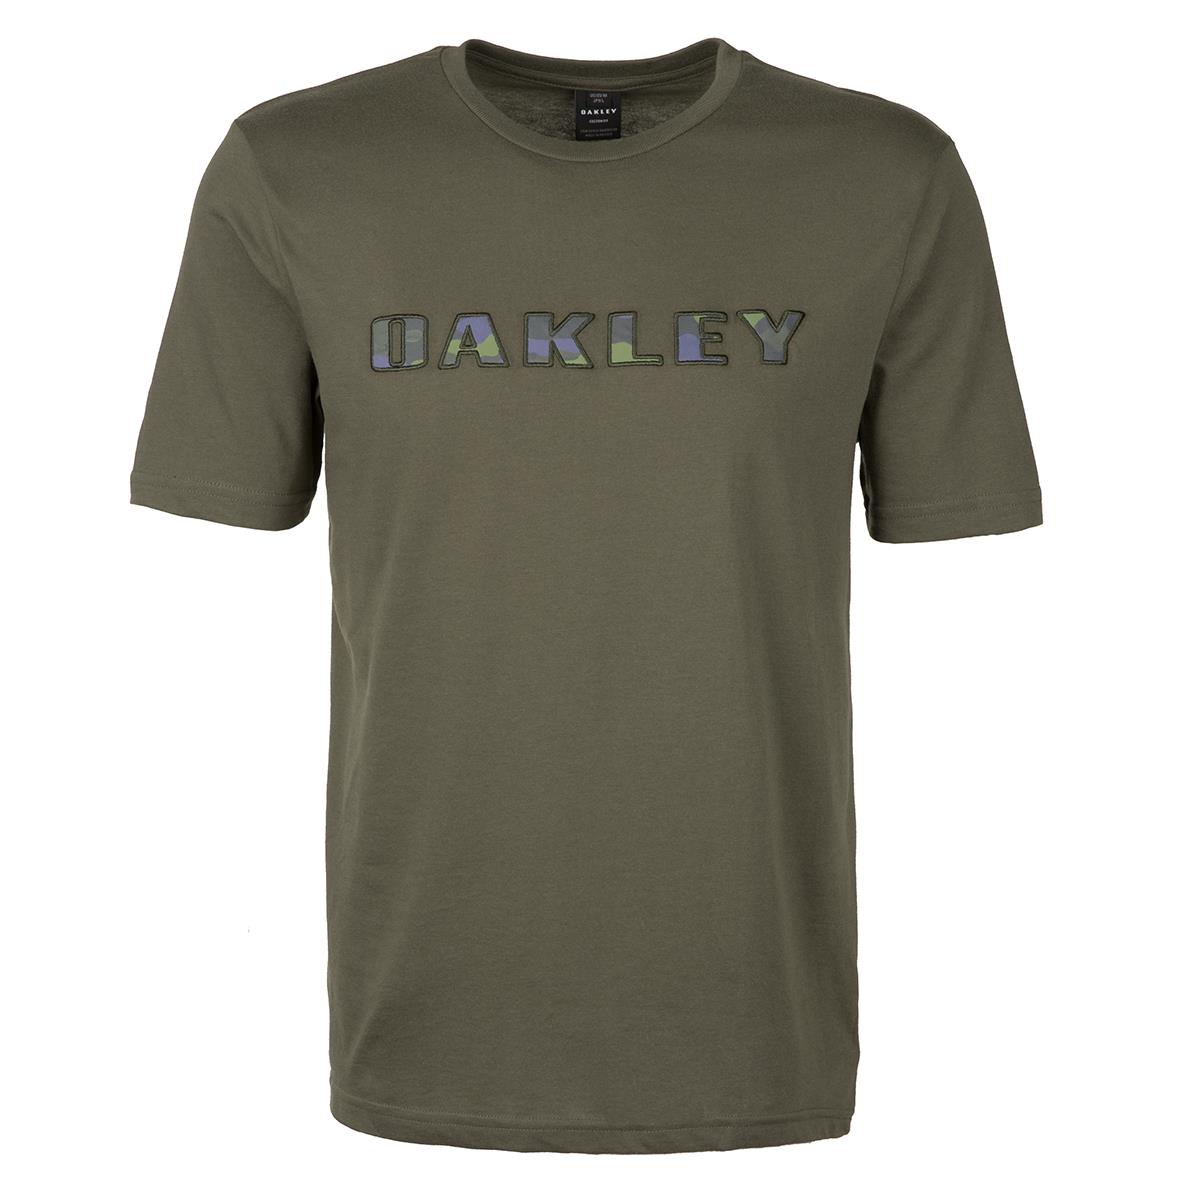 oakley tee shirts